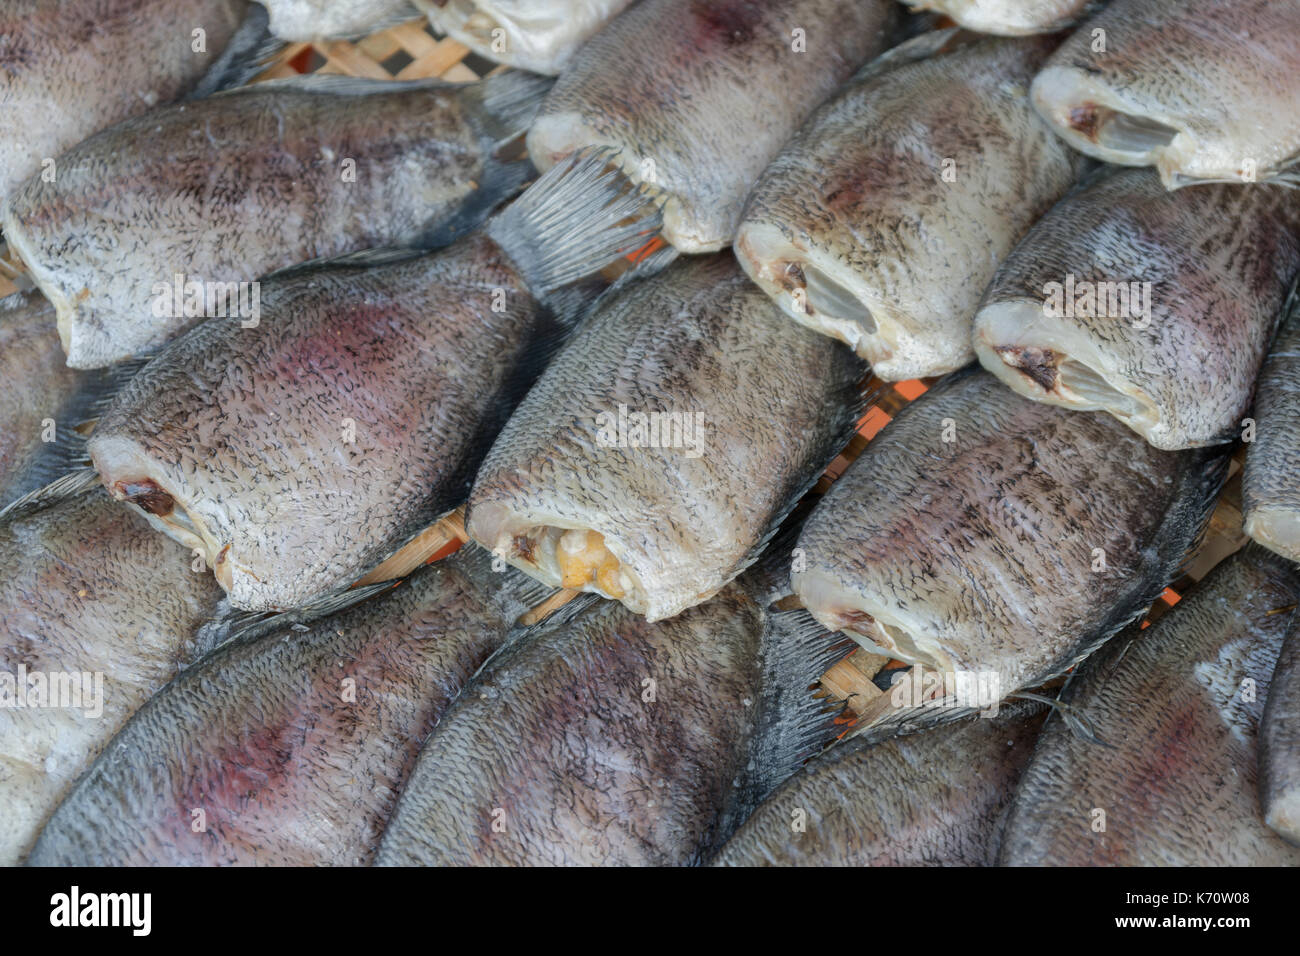 close up  drying snakeskin gourami fishs in threshing basket Stock Photo